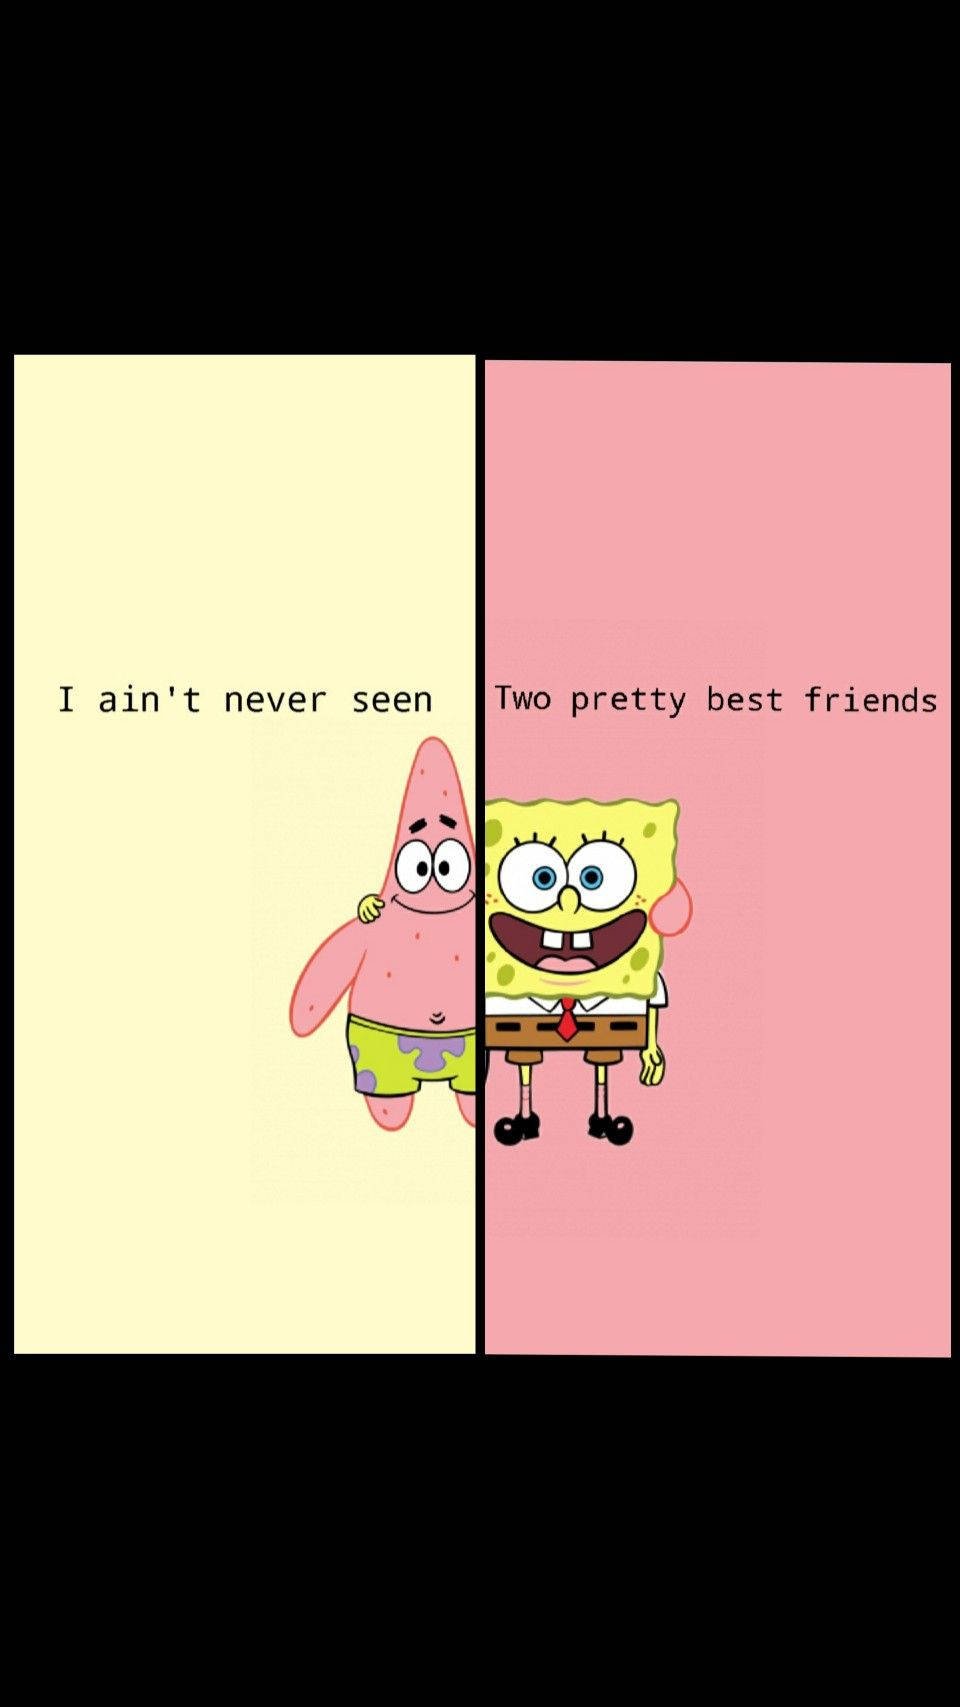 Download Spongebob And Patrick Matching Best Friends Wallpaper